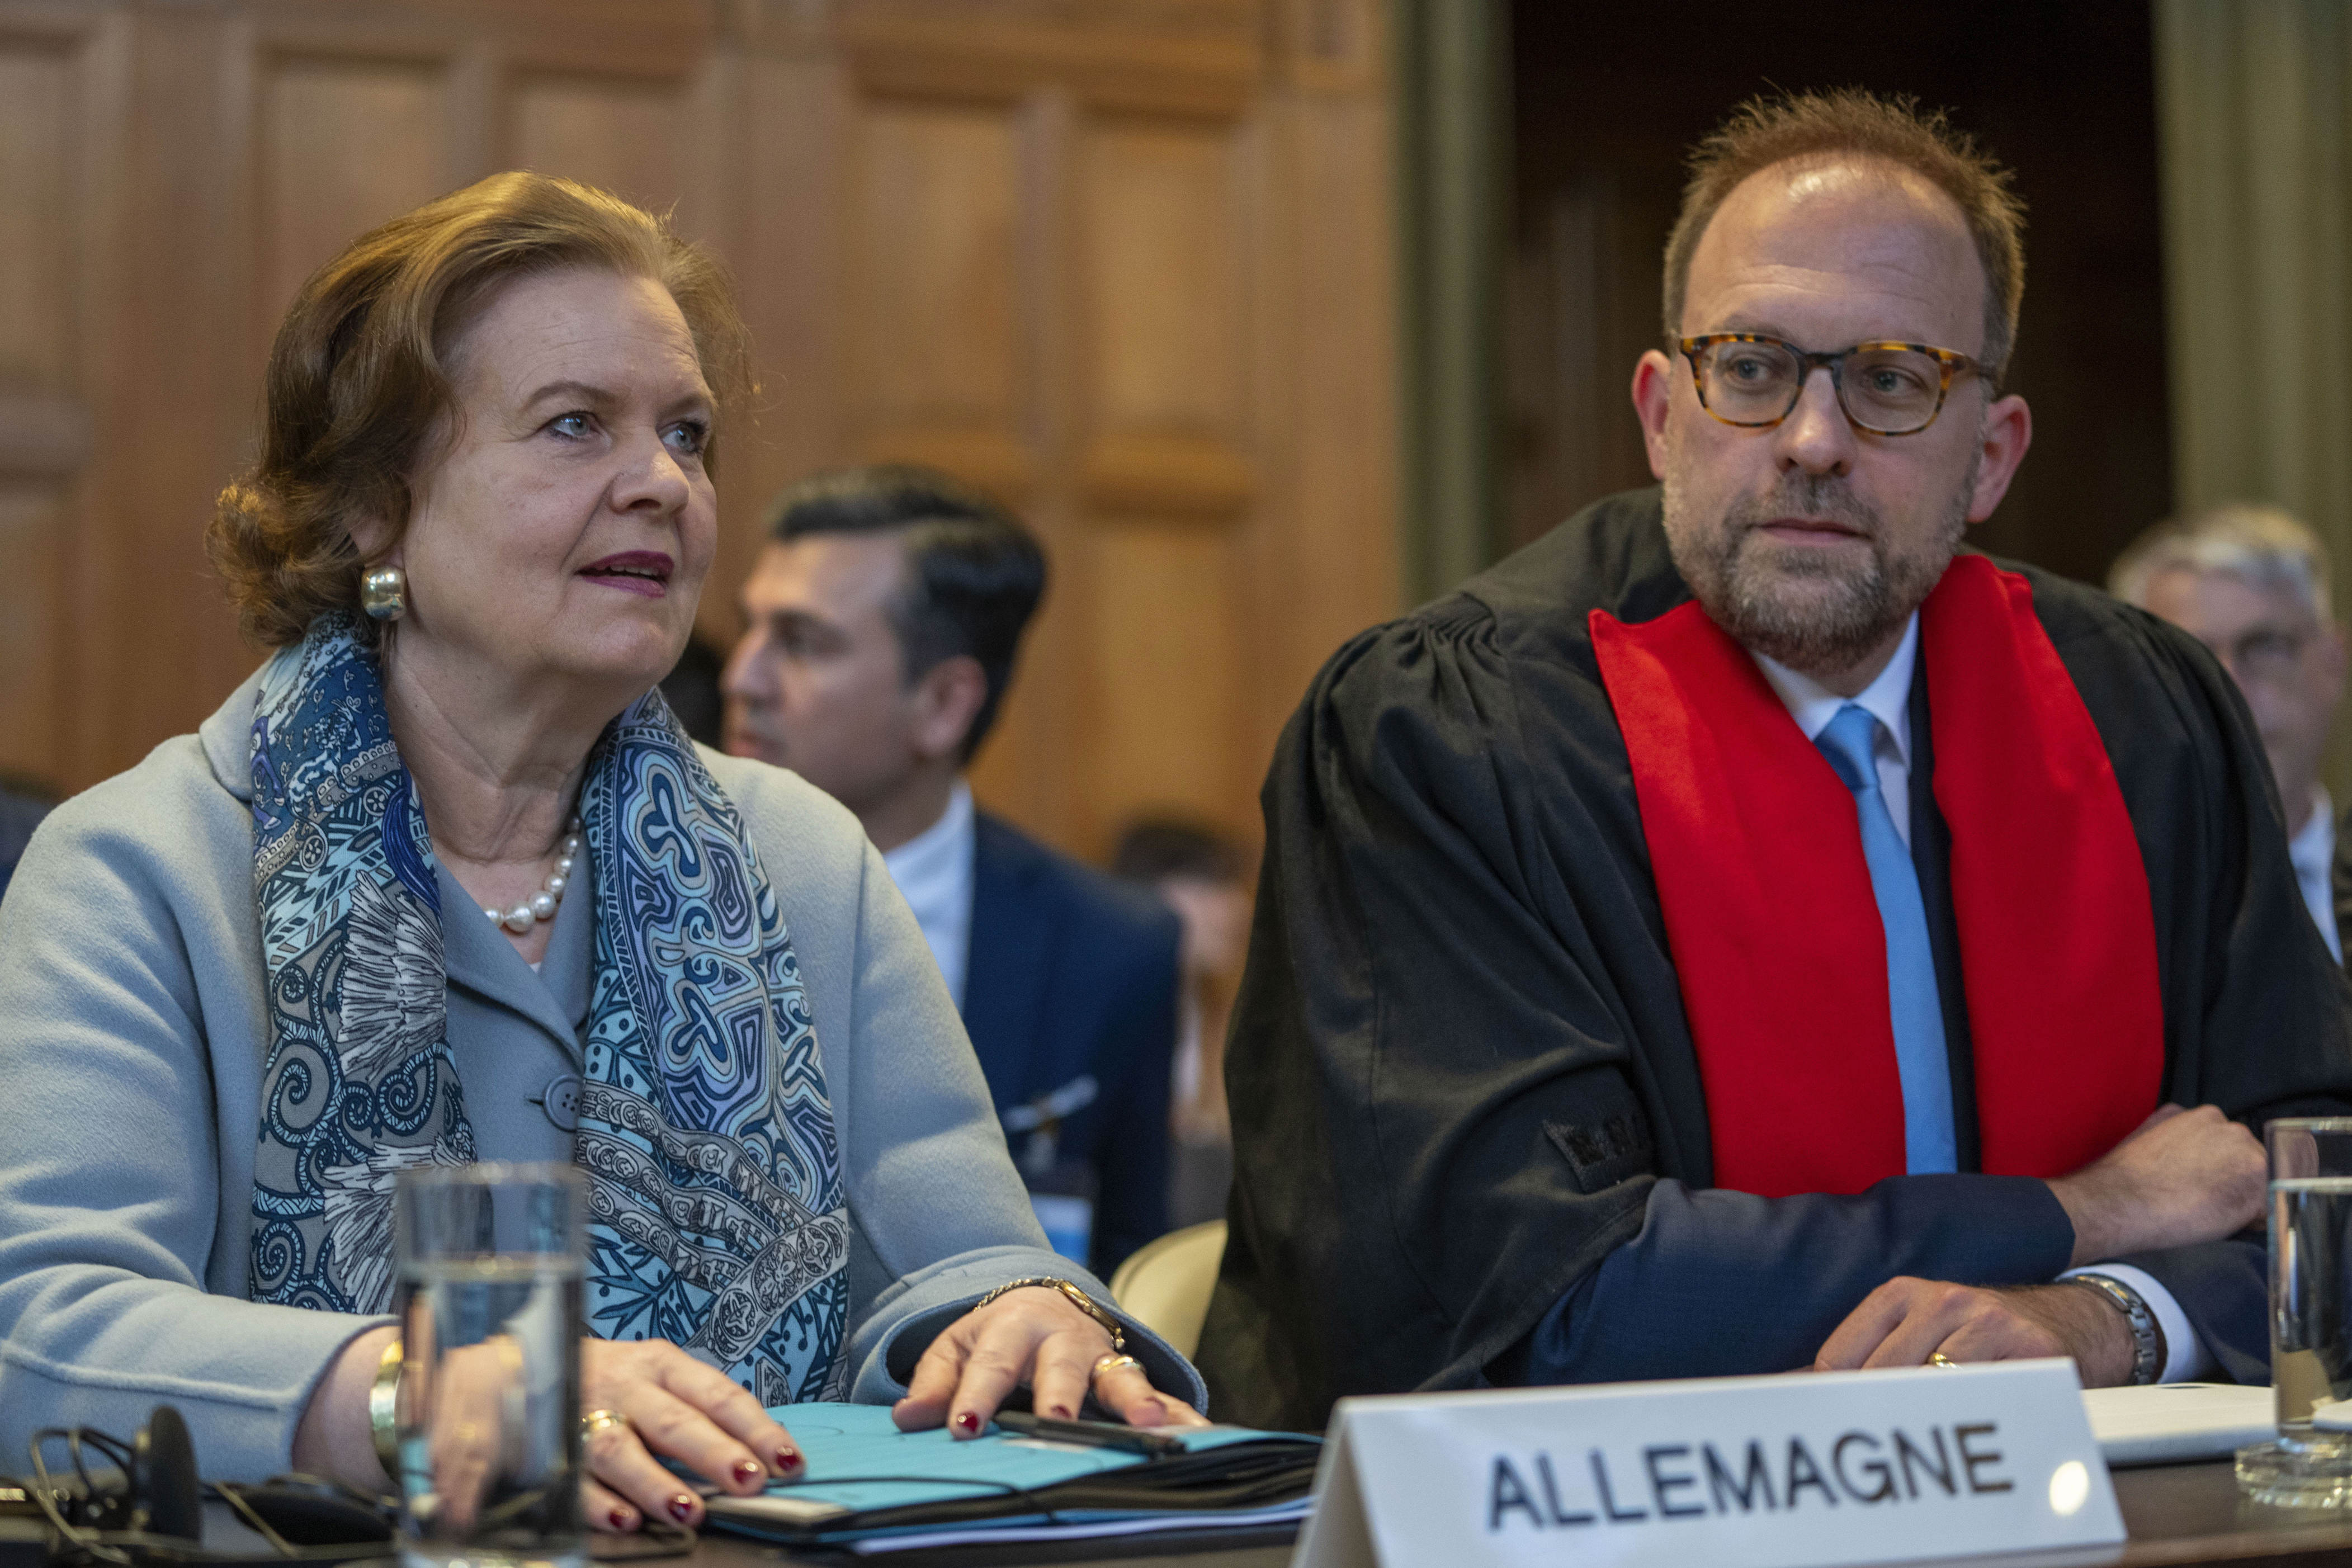 internationaler gerichtshof weist eilanträge nicaraguas gegen deutschland wegen vorwurfs der beihilfe zum genozid im gazastreifen zurück